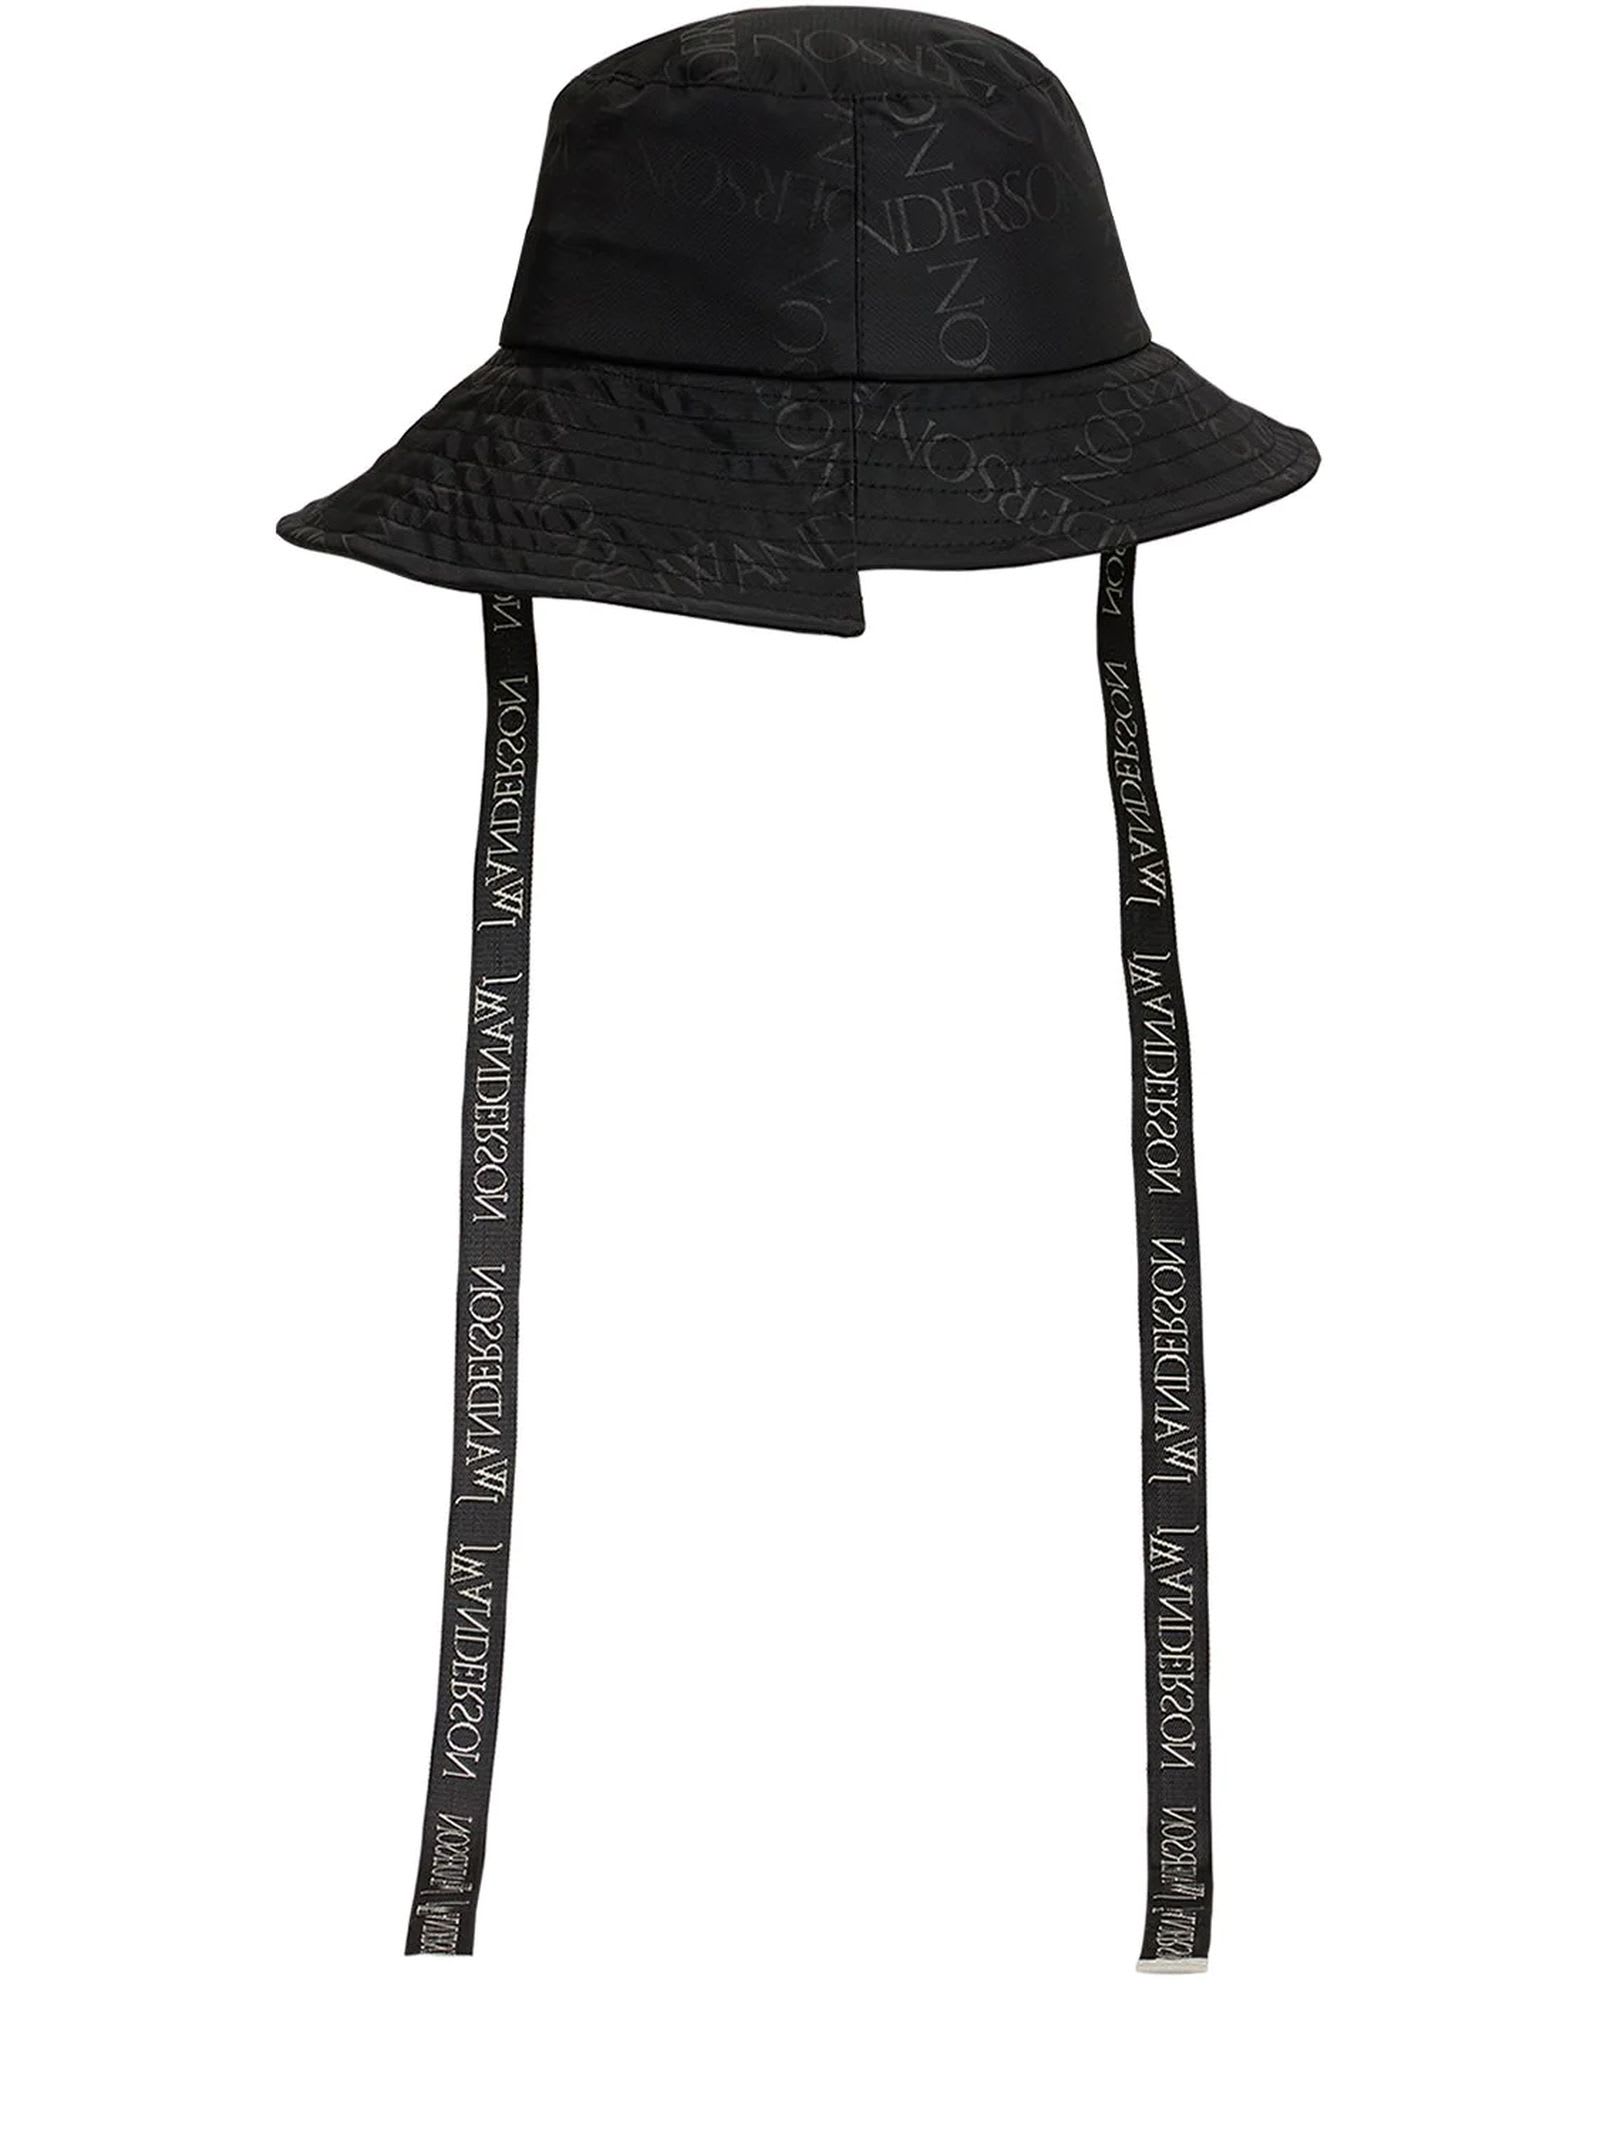 J.W. Anderson Black Bucket Hat